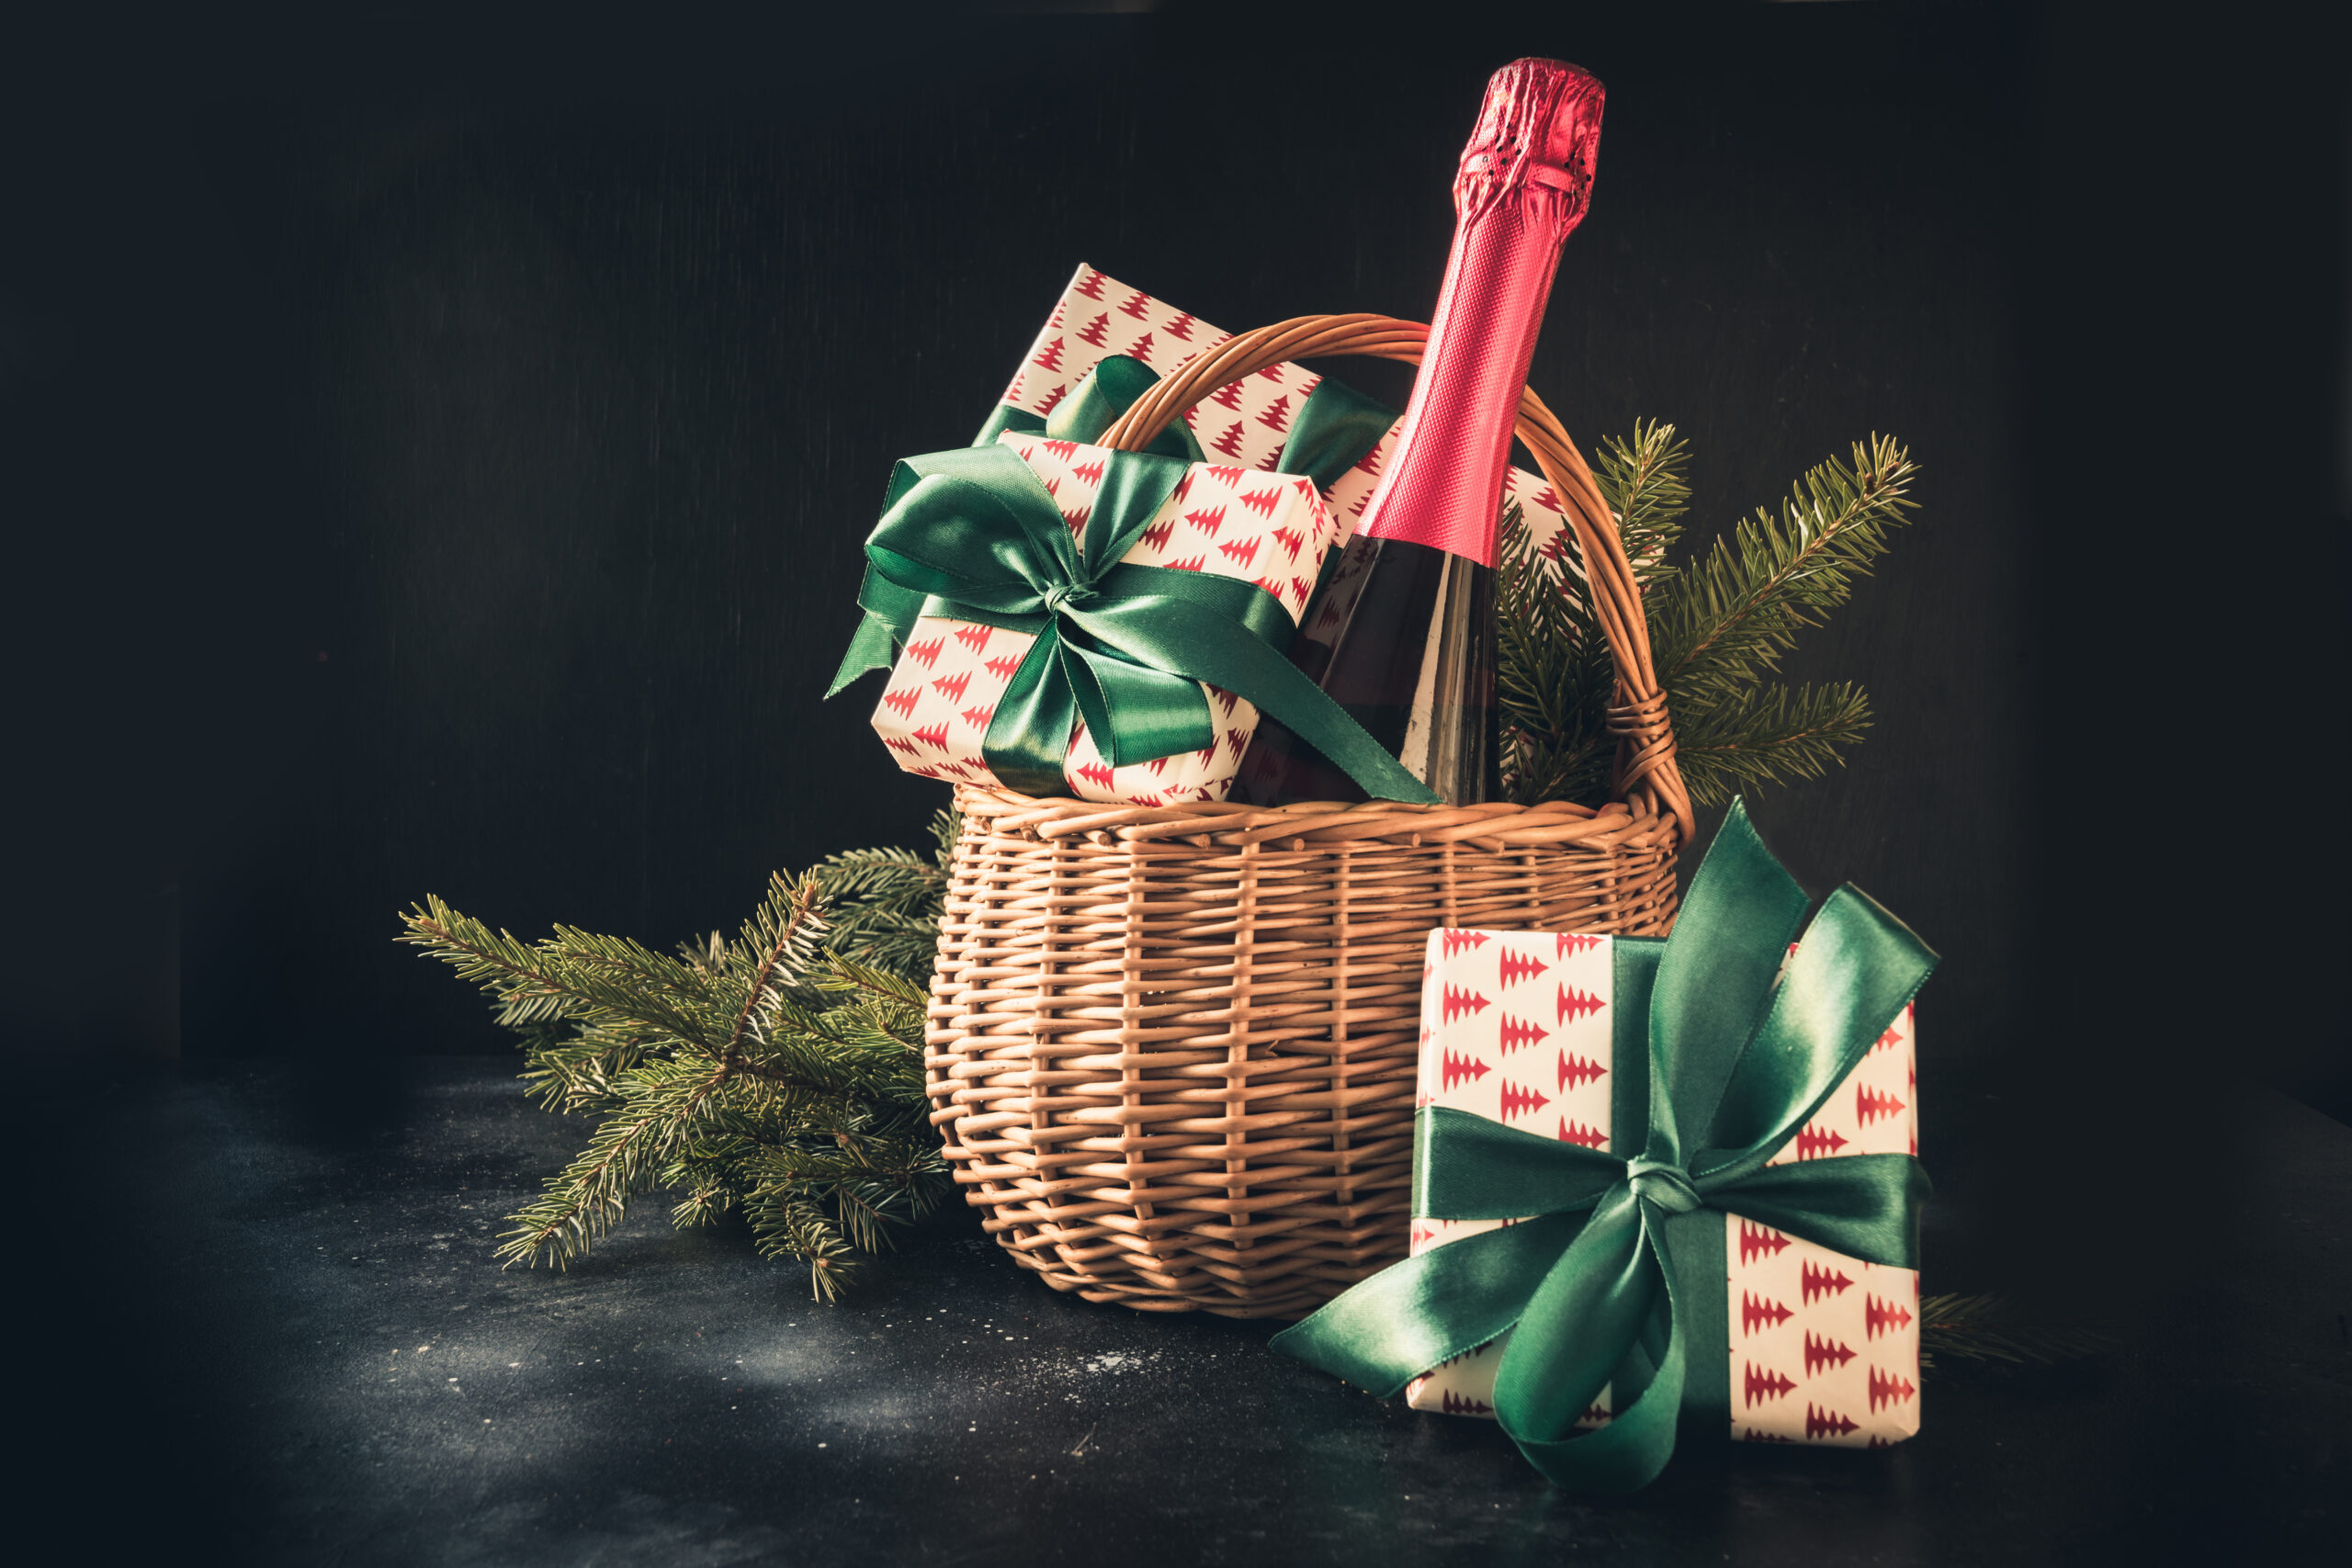 Upominki na Boże Narodzenie – 4 najlepsze propozycje na piękne prezenty dla każdego